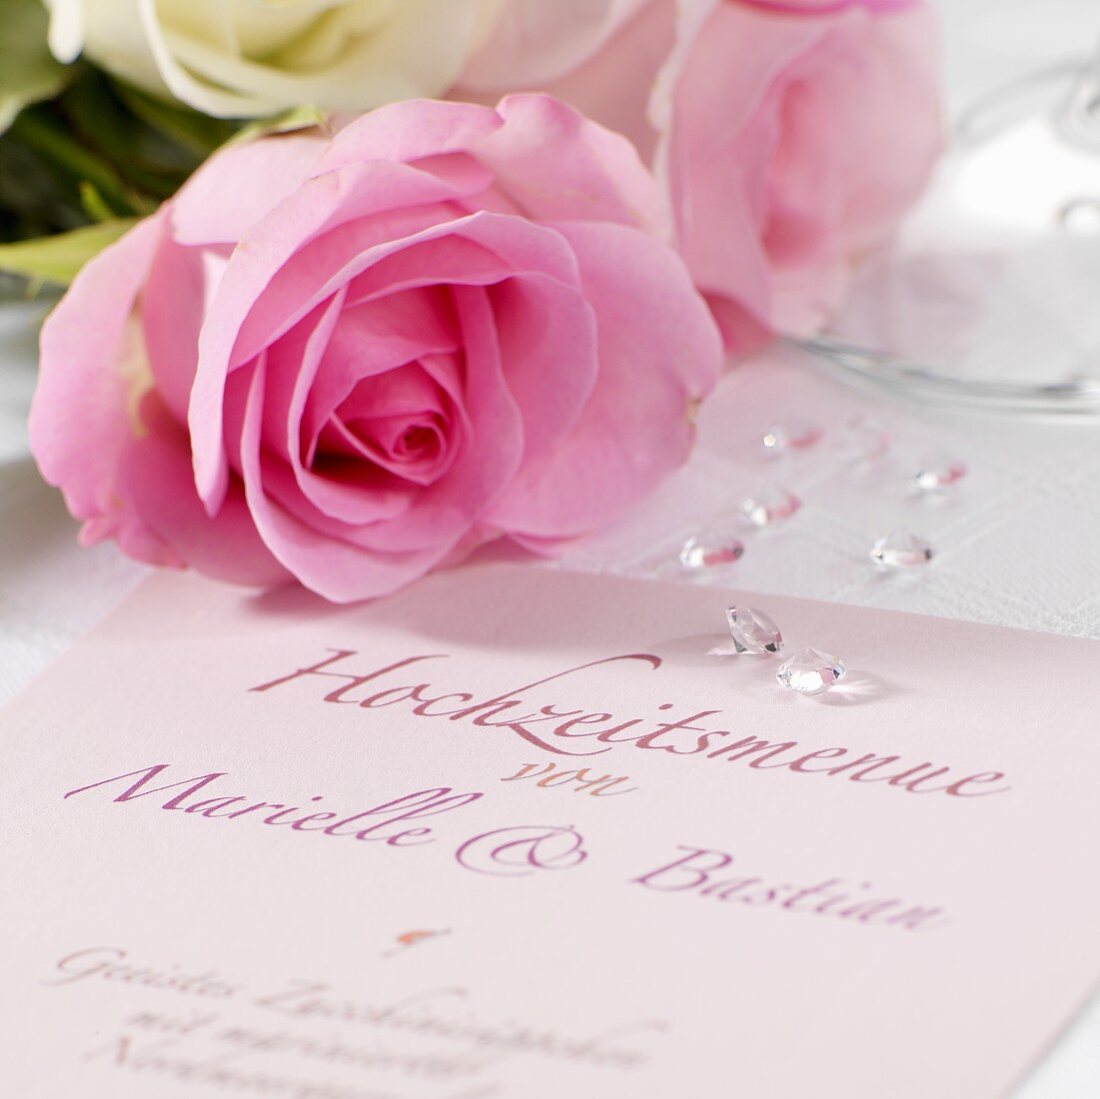 Wedding menu and roses